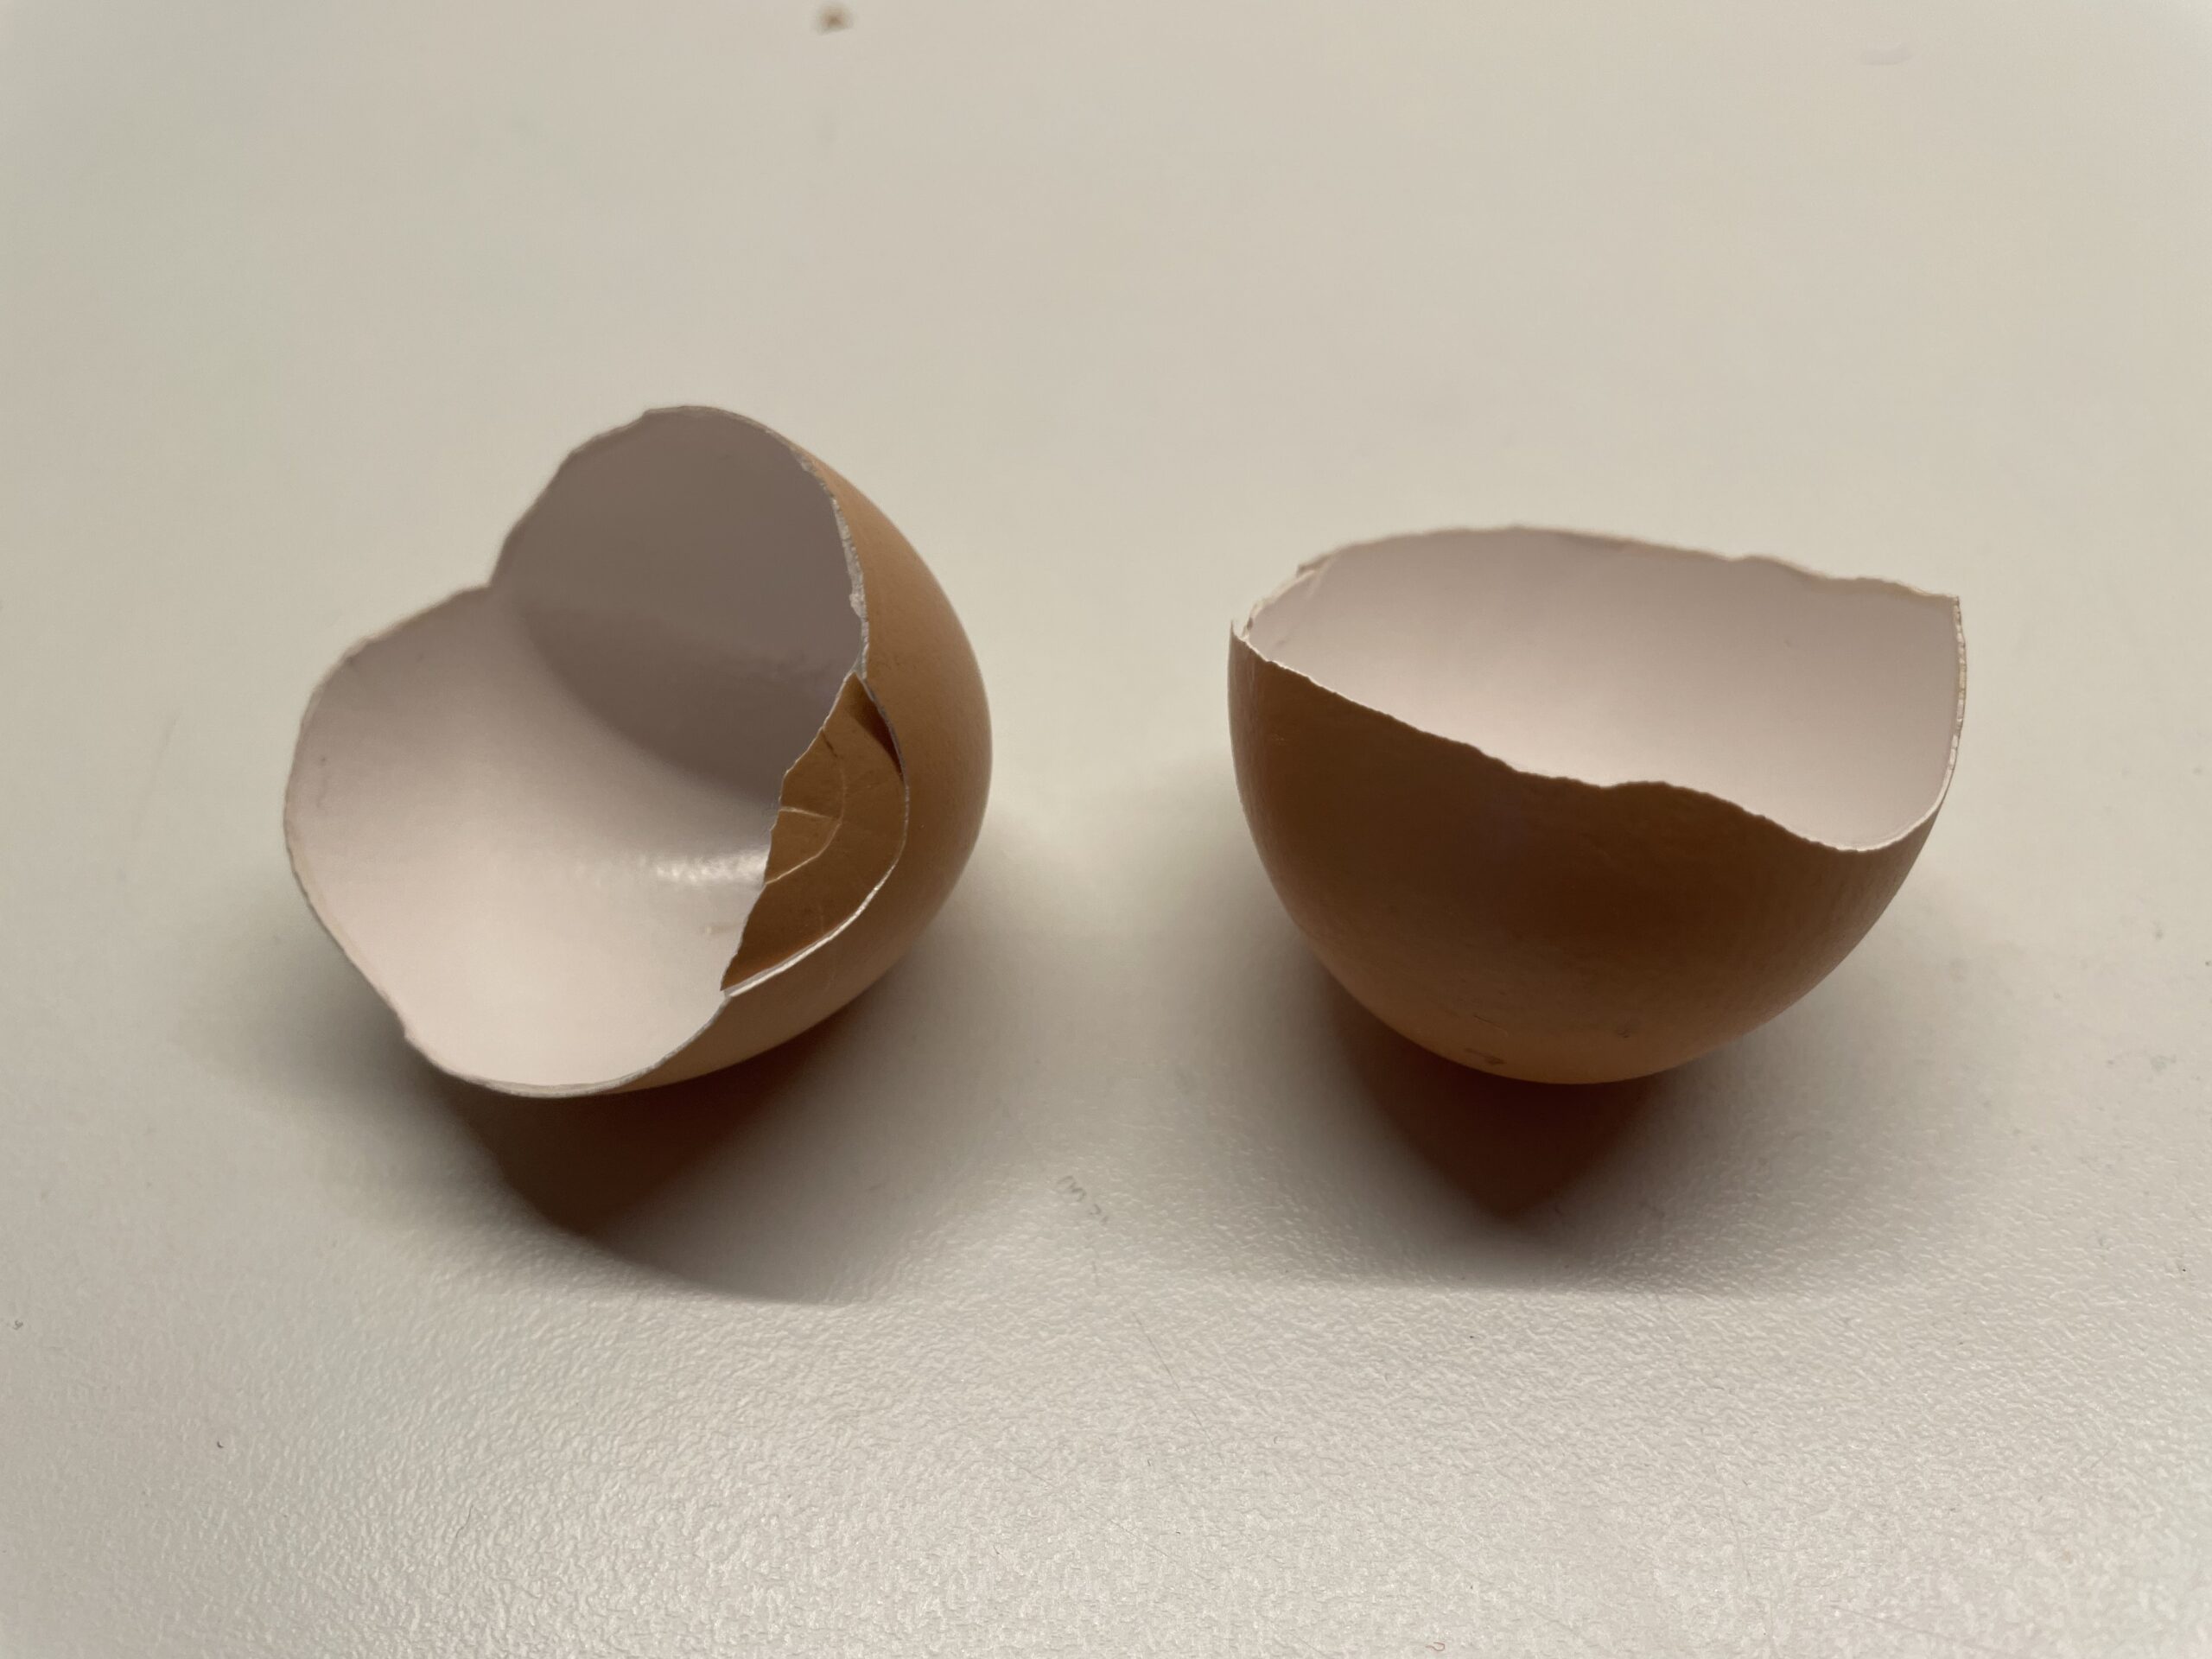 Bild zum Schritt 1 für das Bastel- und DIY-Abenteuer für Kinder: 'Zuerst wascht und trocknet ihr die zwei Hälften einer Eierschale.'